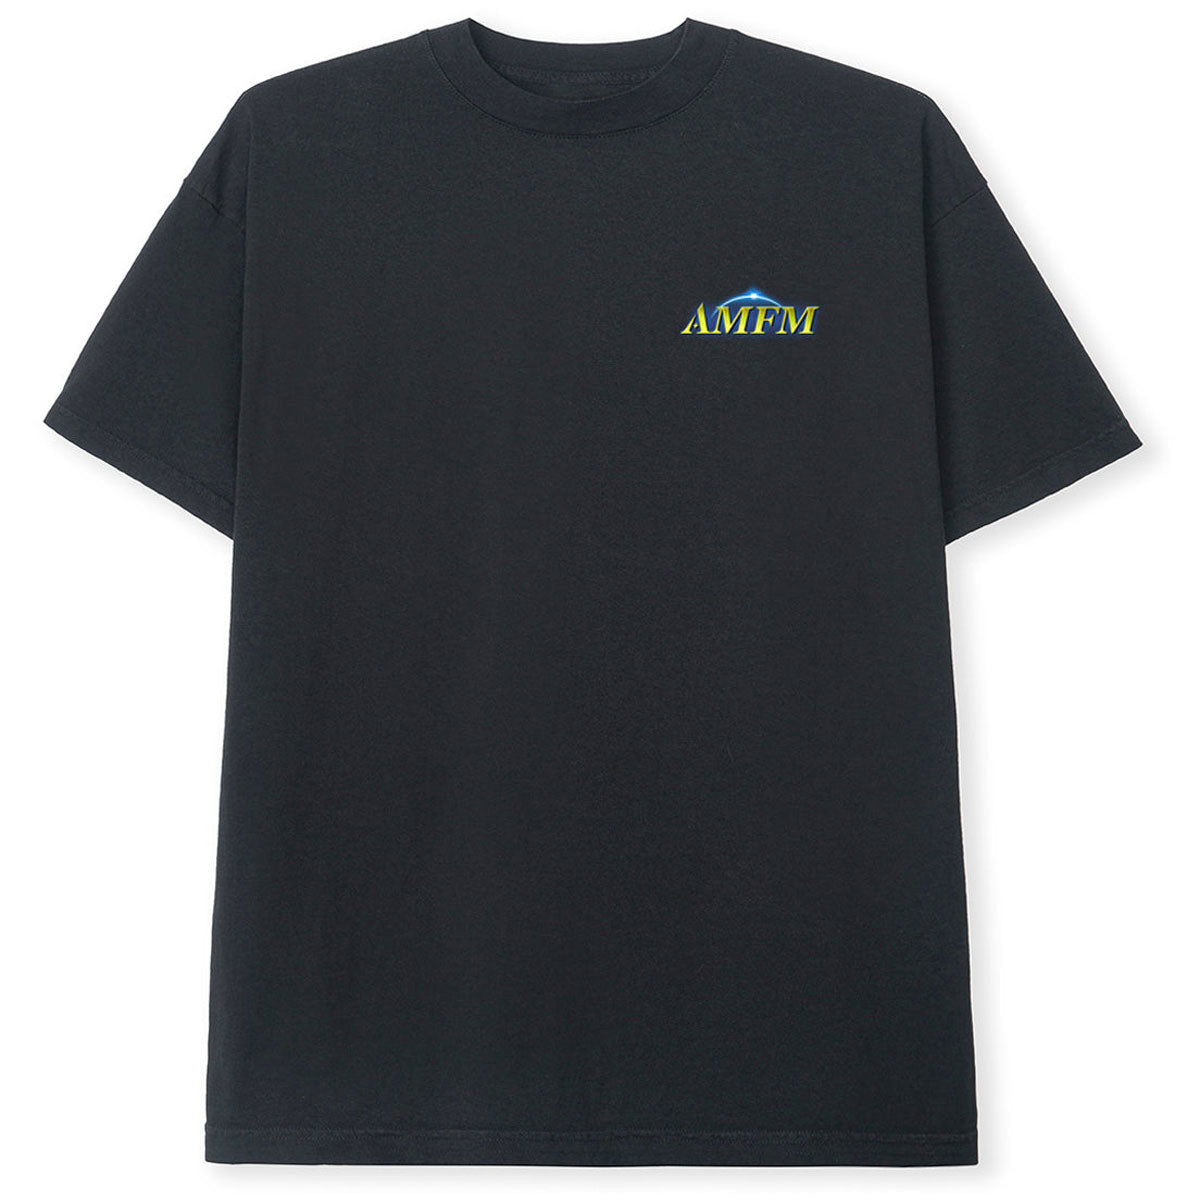 AM-FM DVC T-Shirt - Black image 2